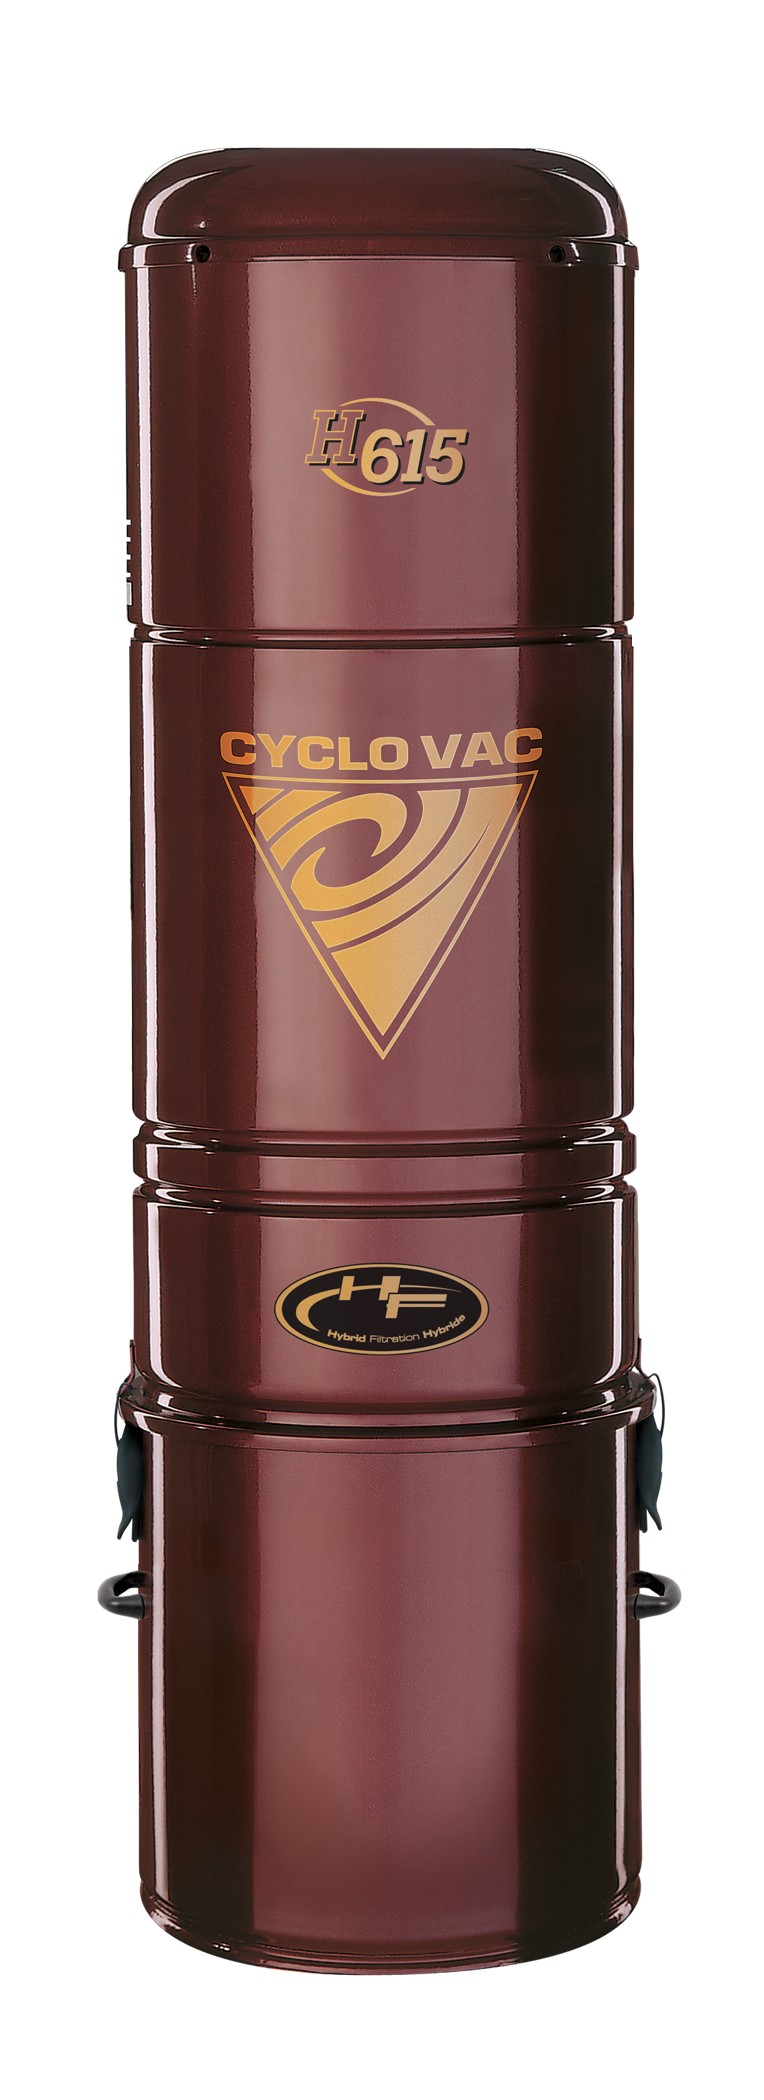 Jednostka centralna Cyclo Vac H615